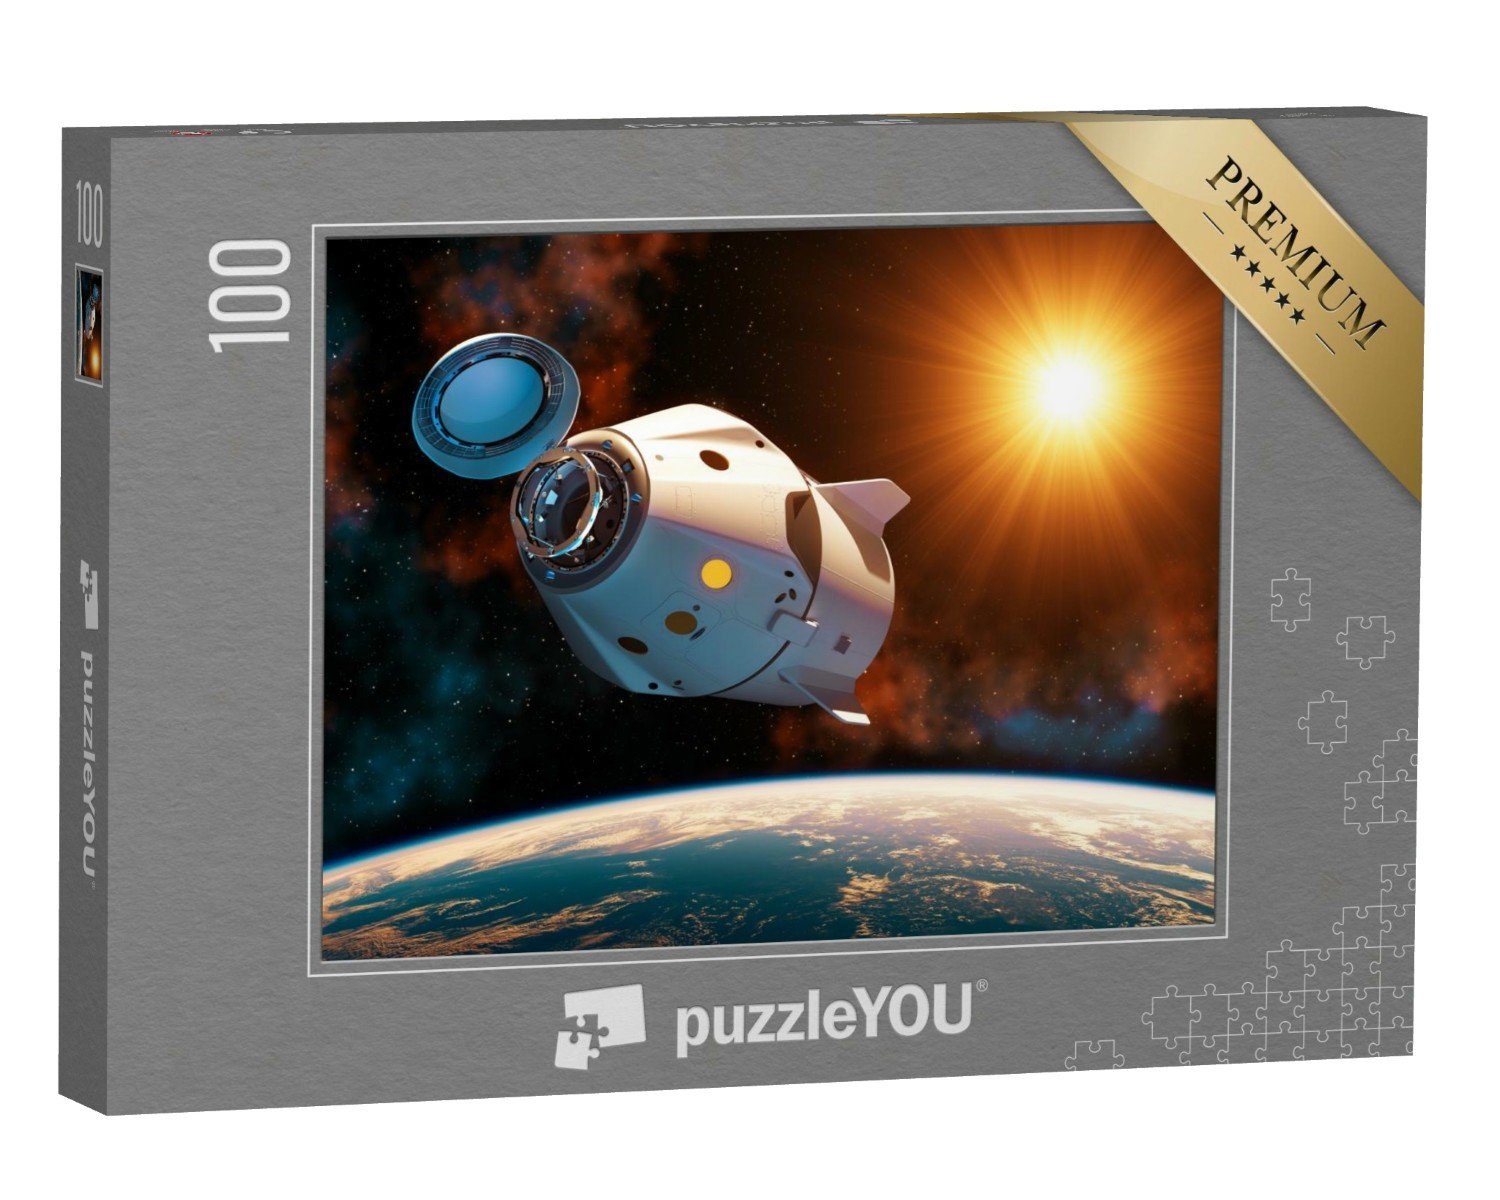 puzzleYOU Puzzle Raumschiff mit offener Andockluke, 100 Puzzleteile, puzzleYOU-Kollektionen Weltraum, Universum